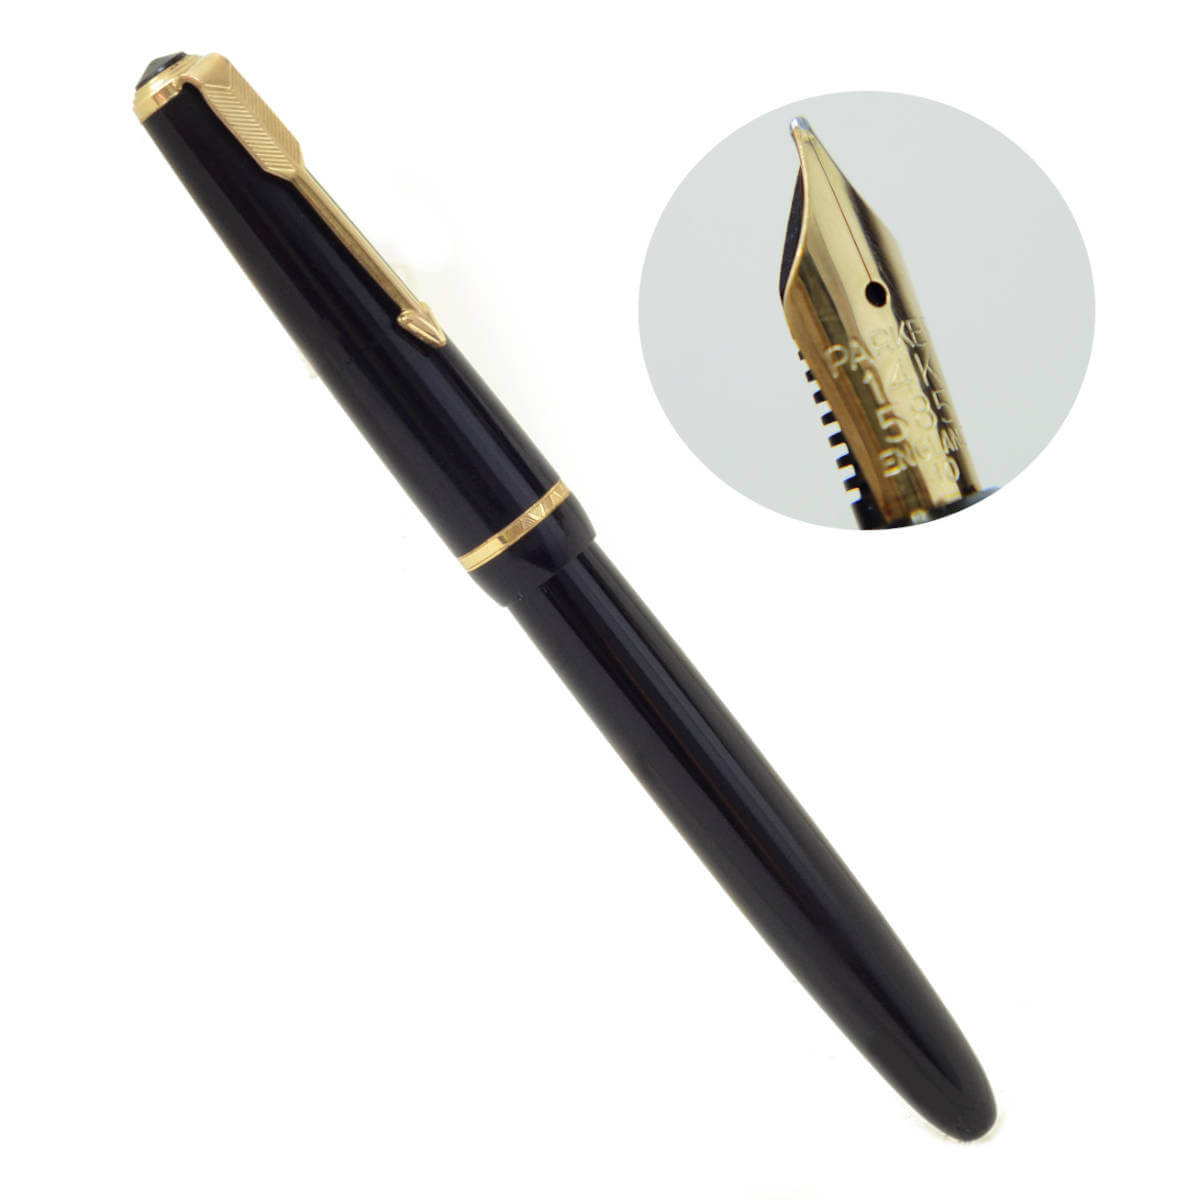 Vintage parker duofold junior black fountain pen – 14 Karat gold M nib – Used